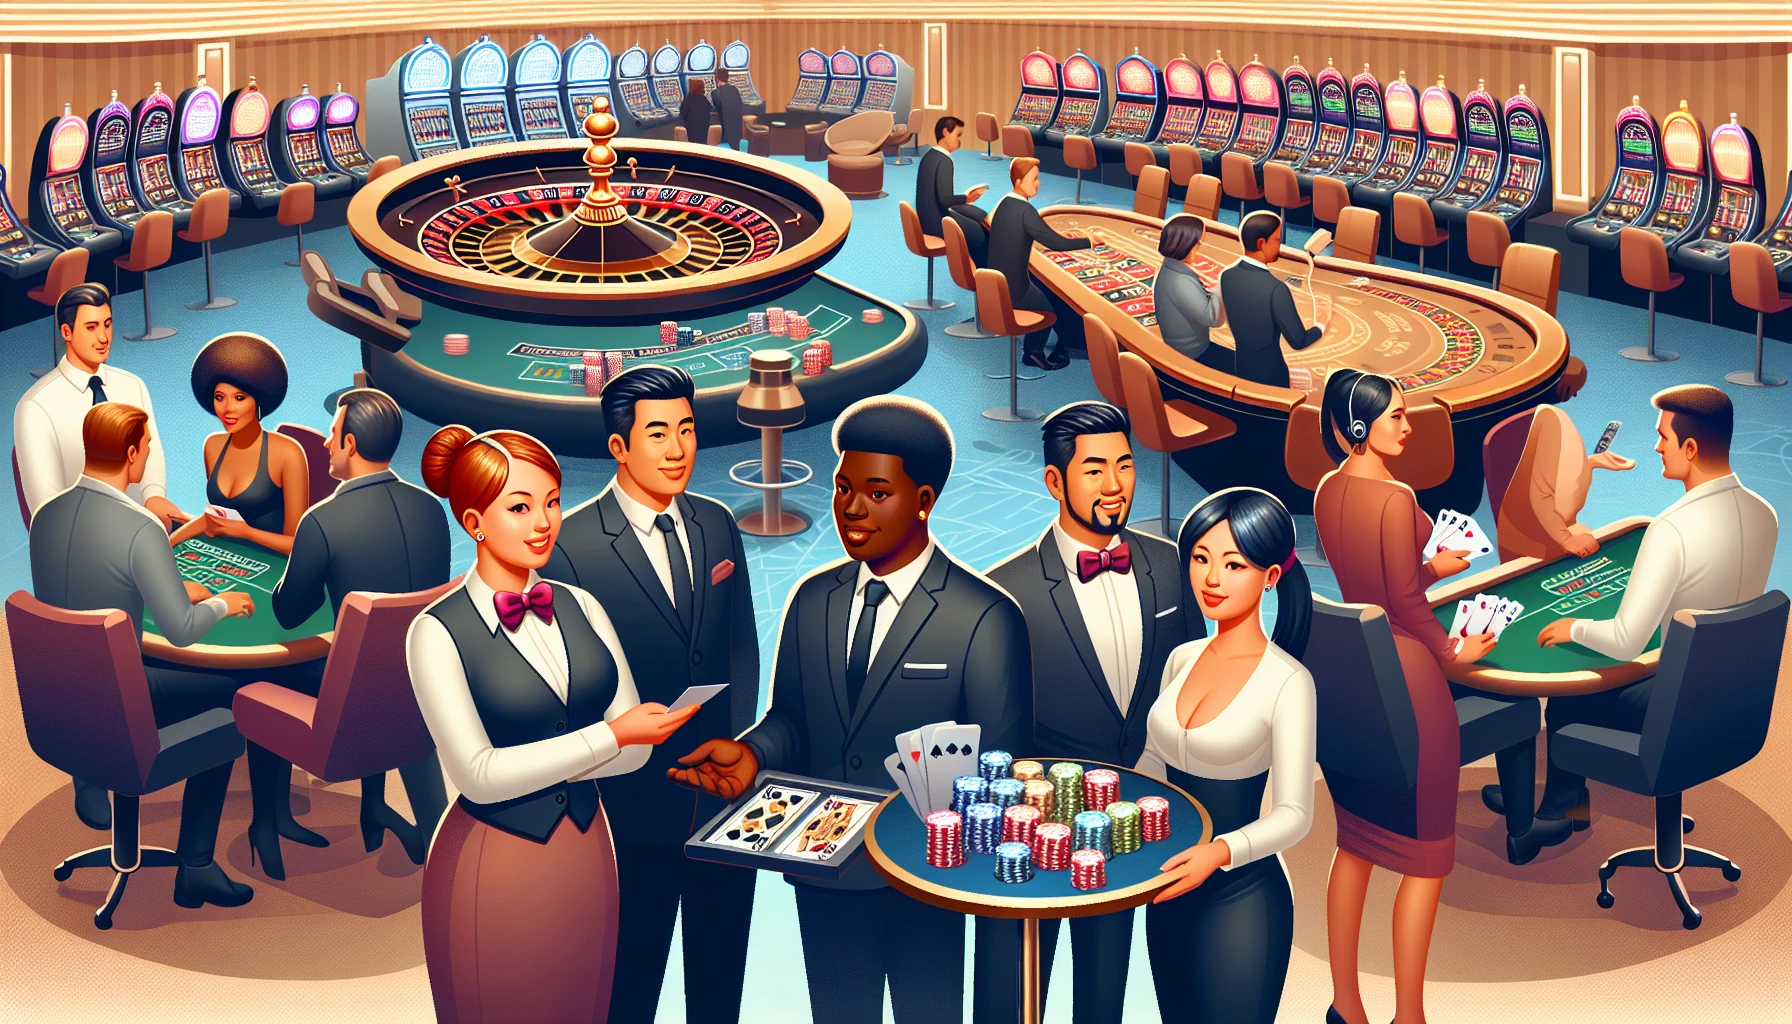 Recruitment process in a casino